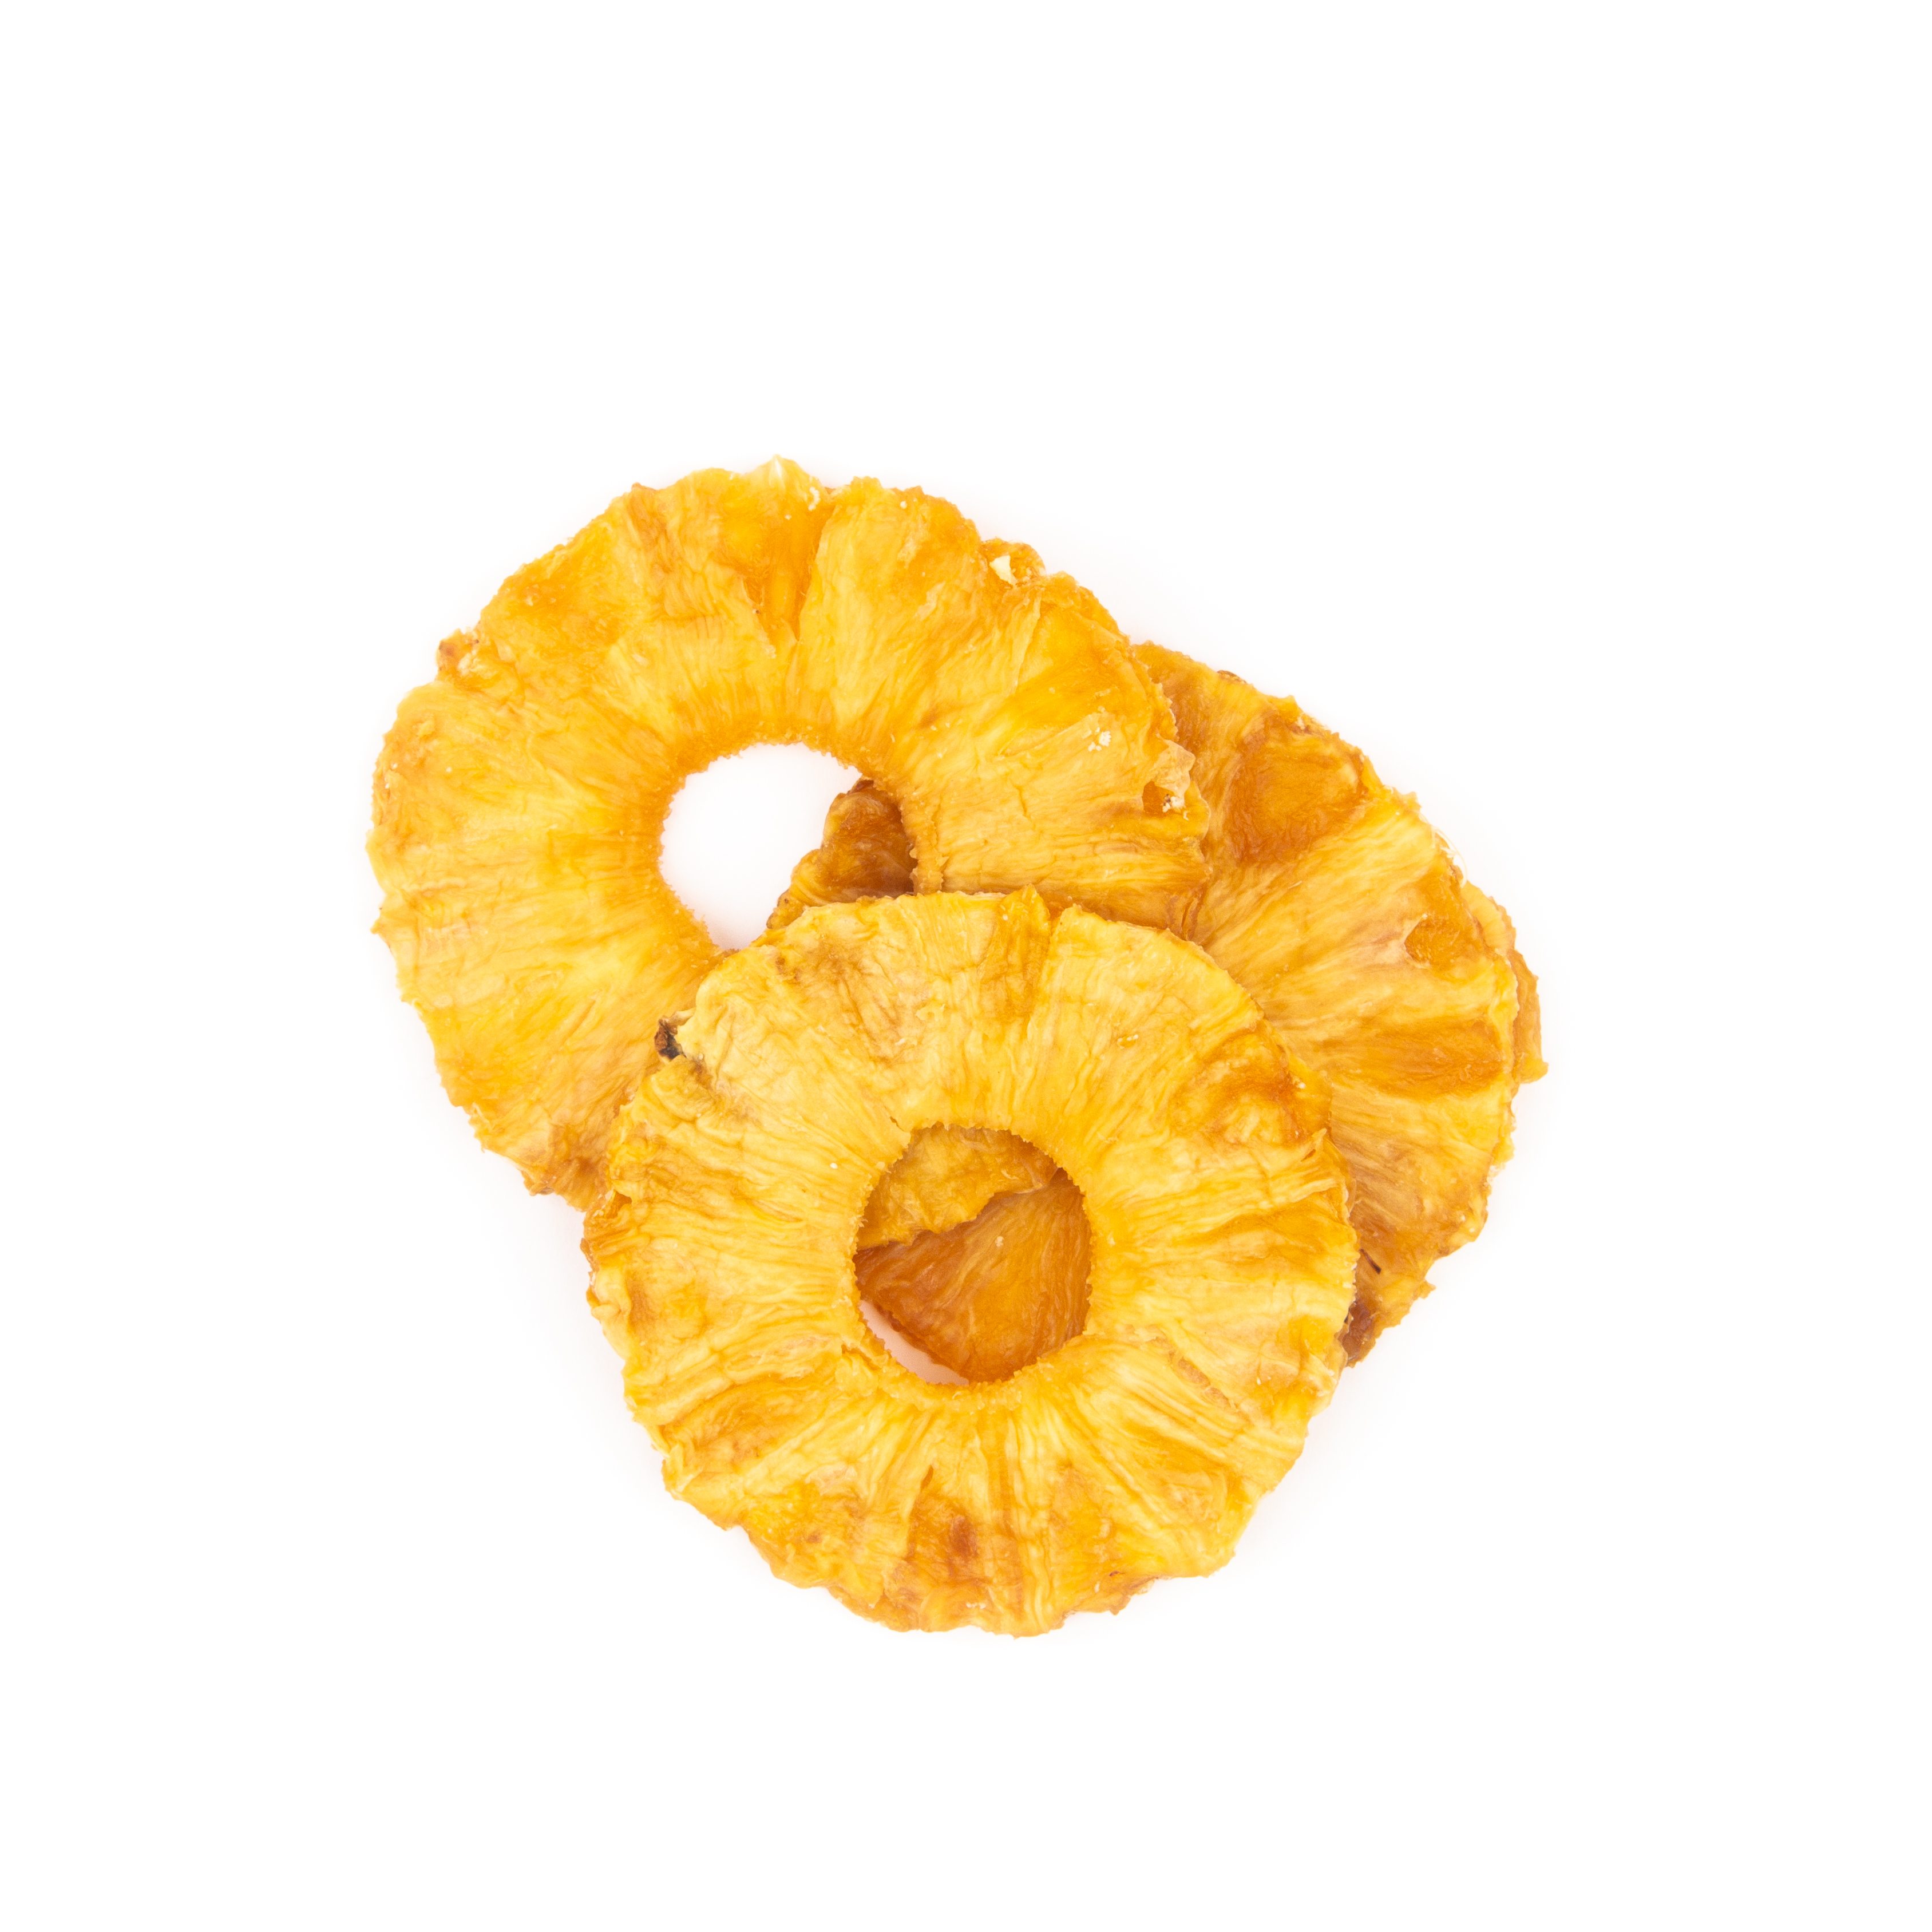 Trockenfrüchte Ananas Häufchen